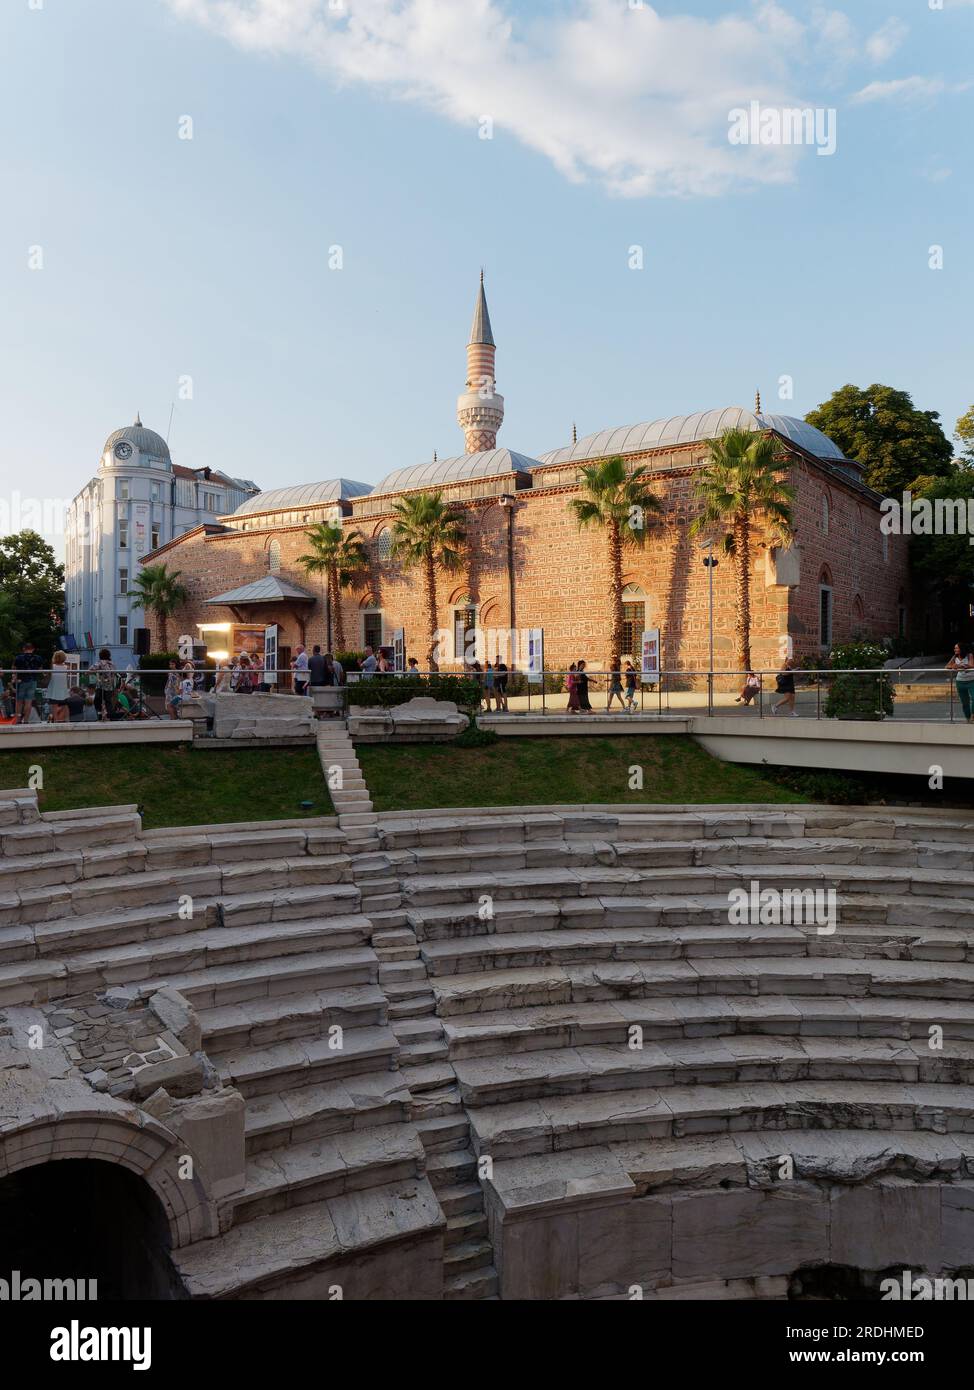 Plovdiv, Bulgarien, die älteste Stadt und längste Fußgängerzone Europas. Römisches Stadion mit der Freitagsmoschee aka Dzhumaya Moschee dahinter. Stockfoto